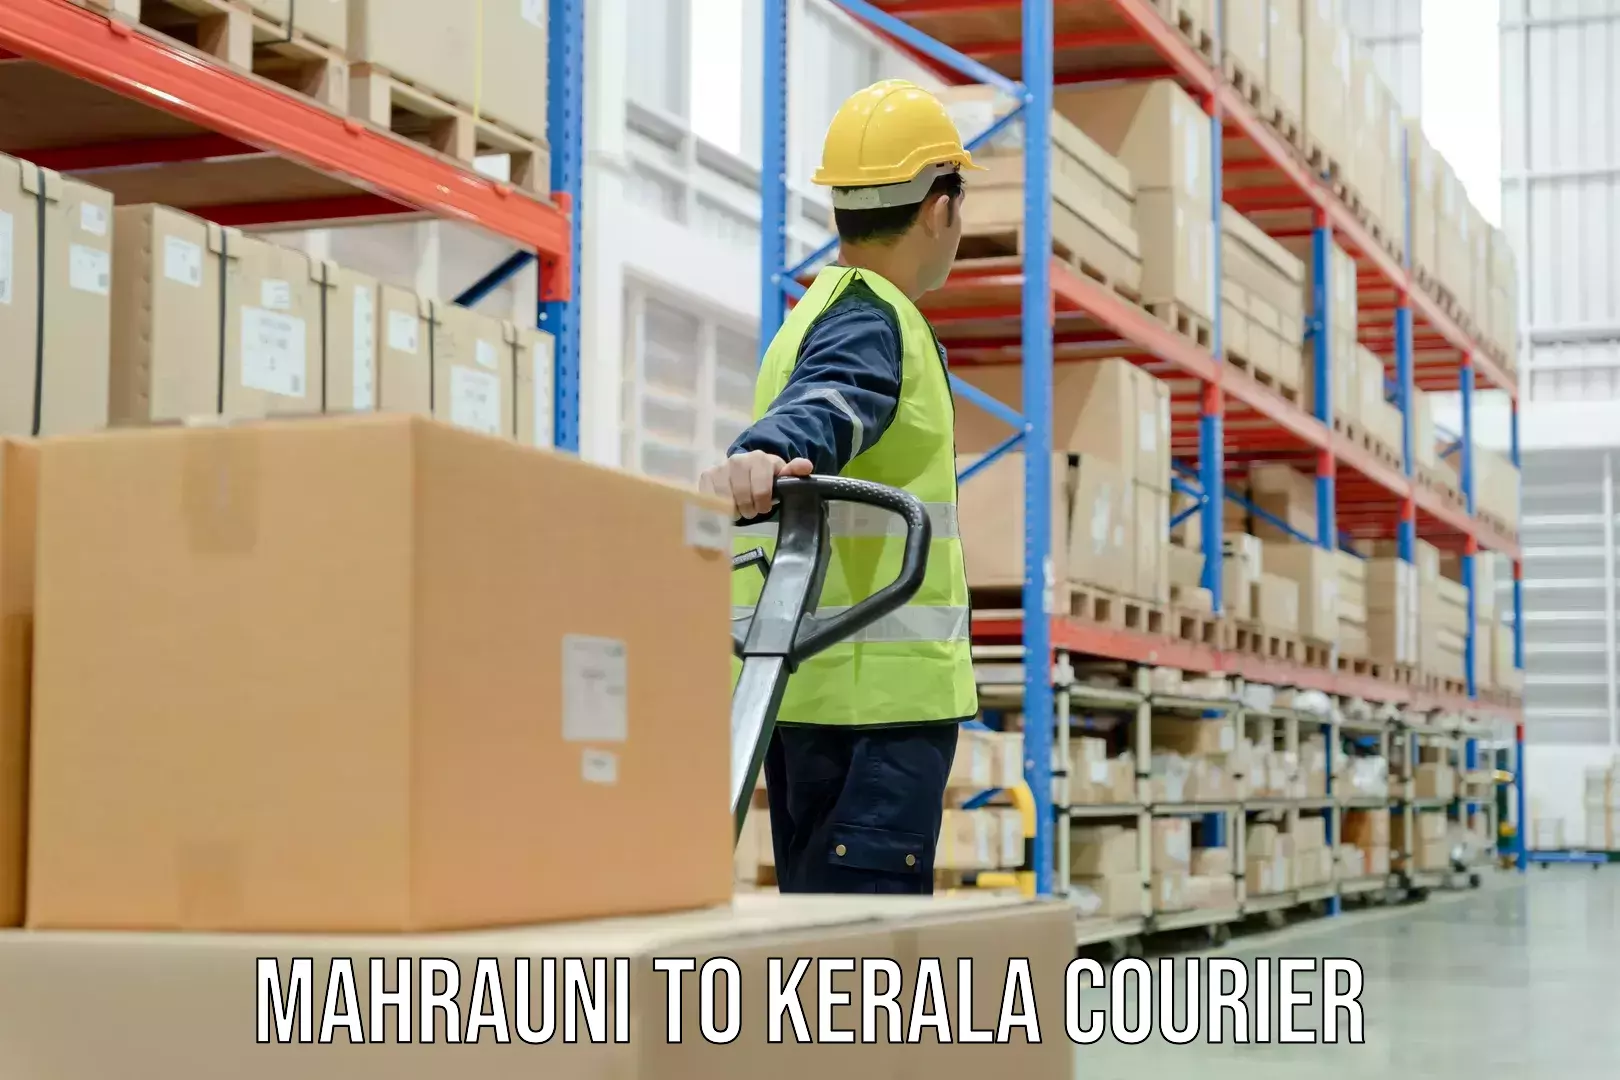 Customized delivery options Mahrauni to Mundakayam